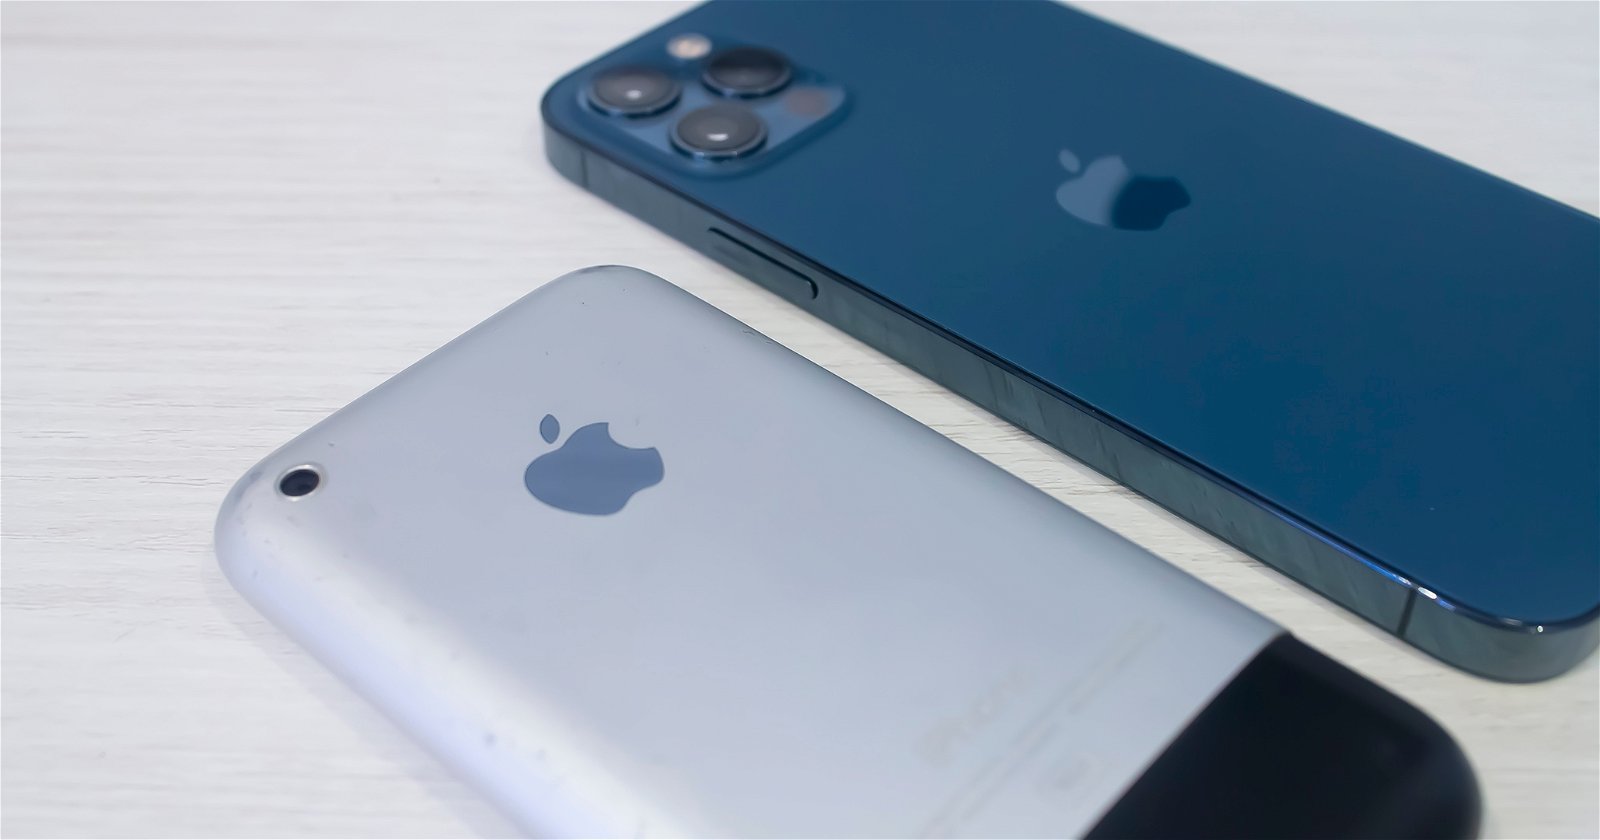 iPhone original vs iPhone 12